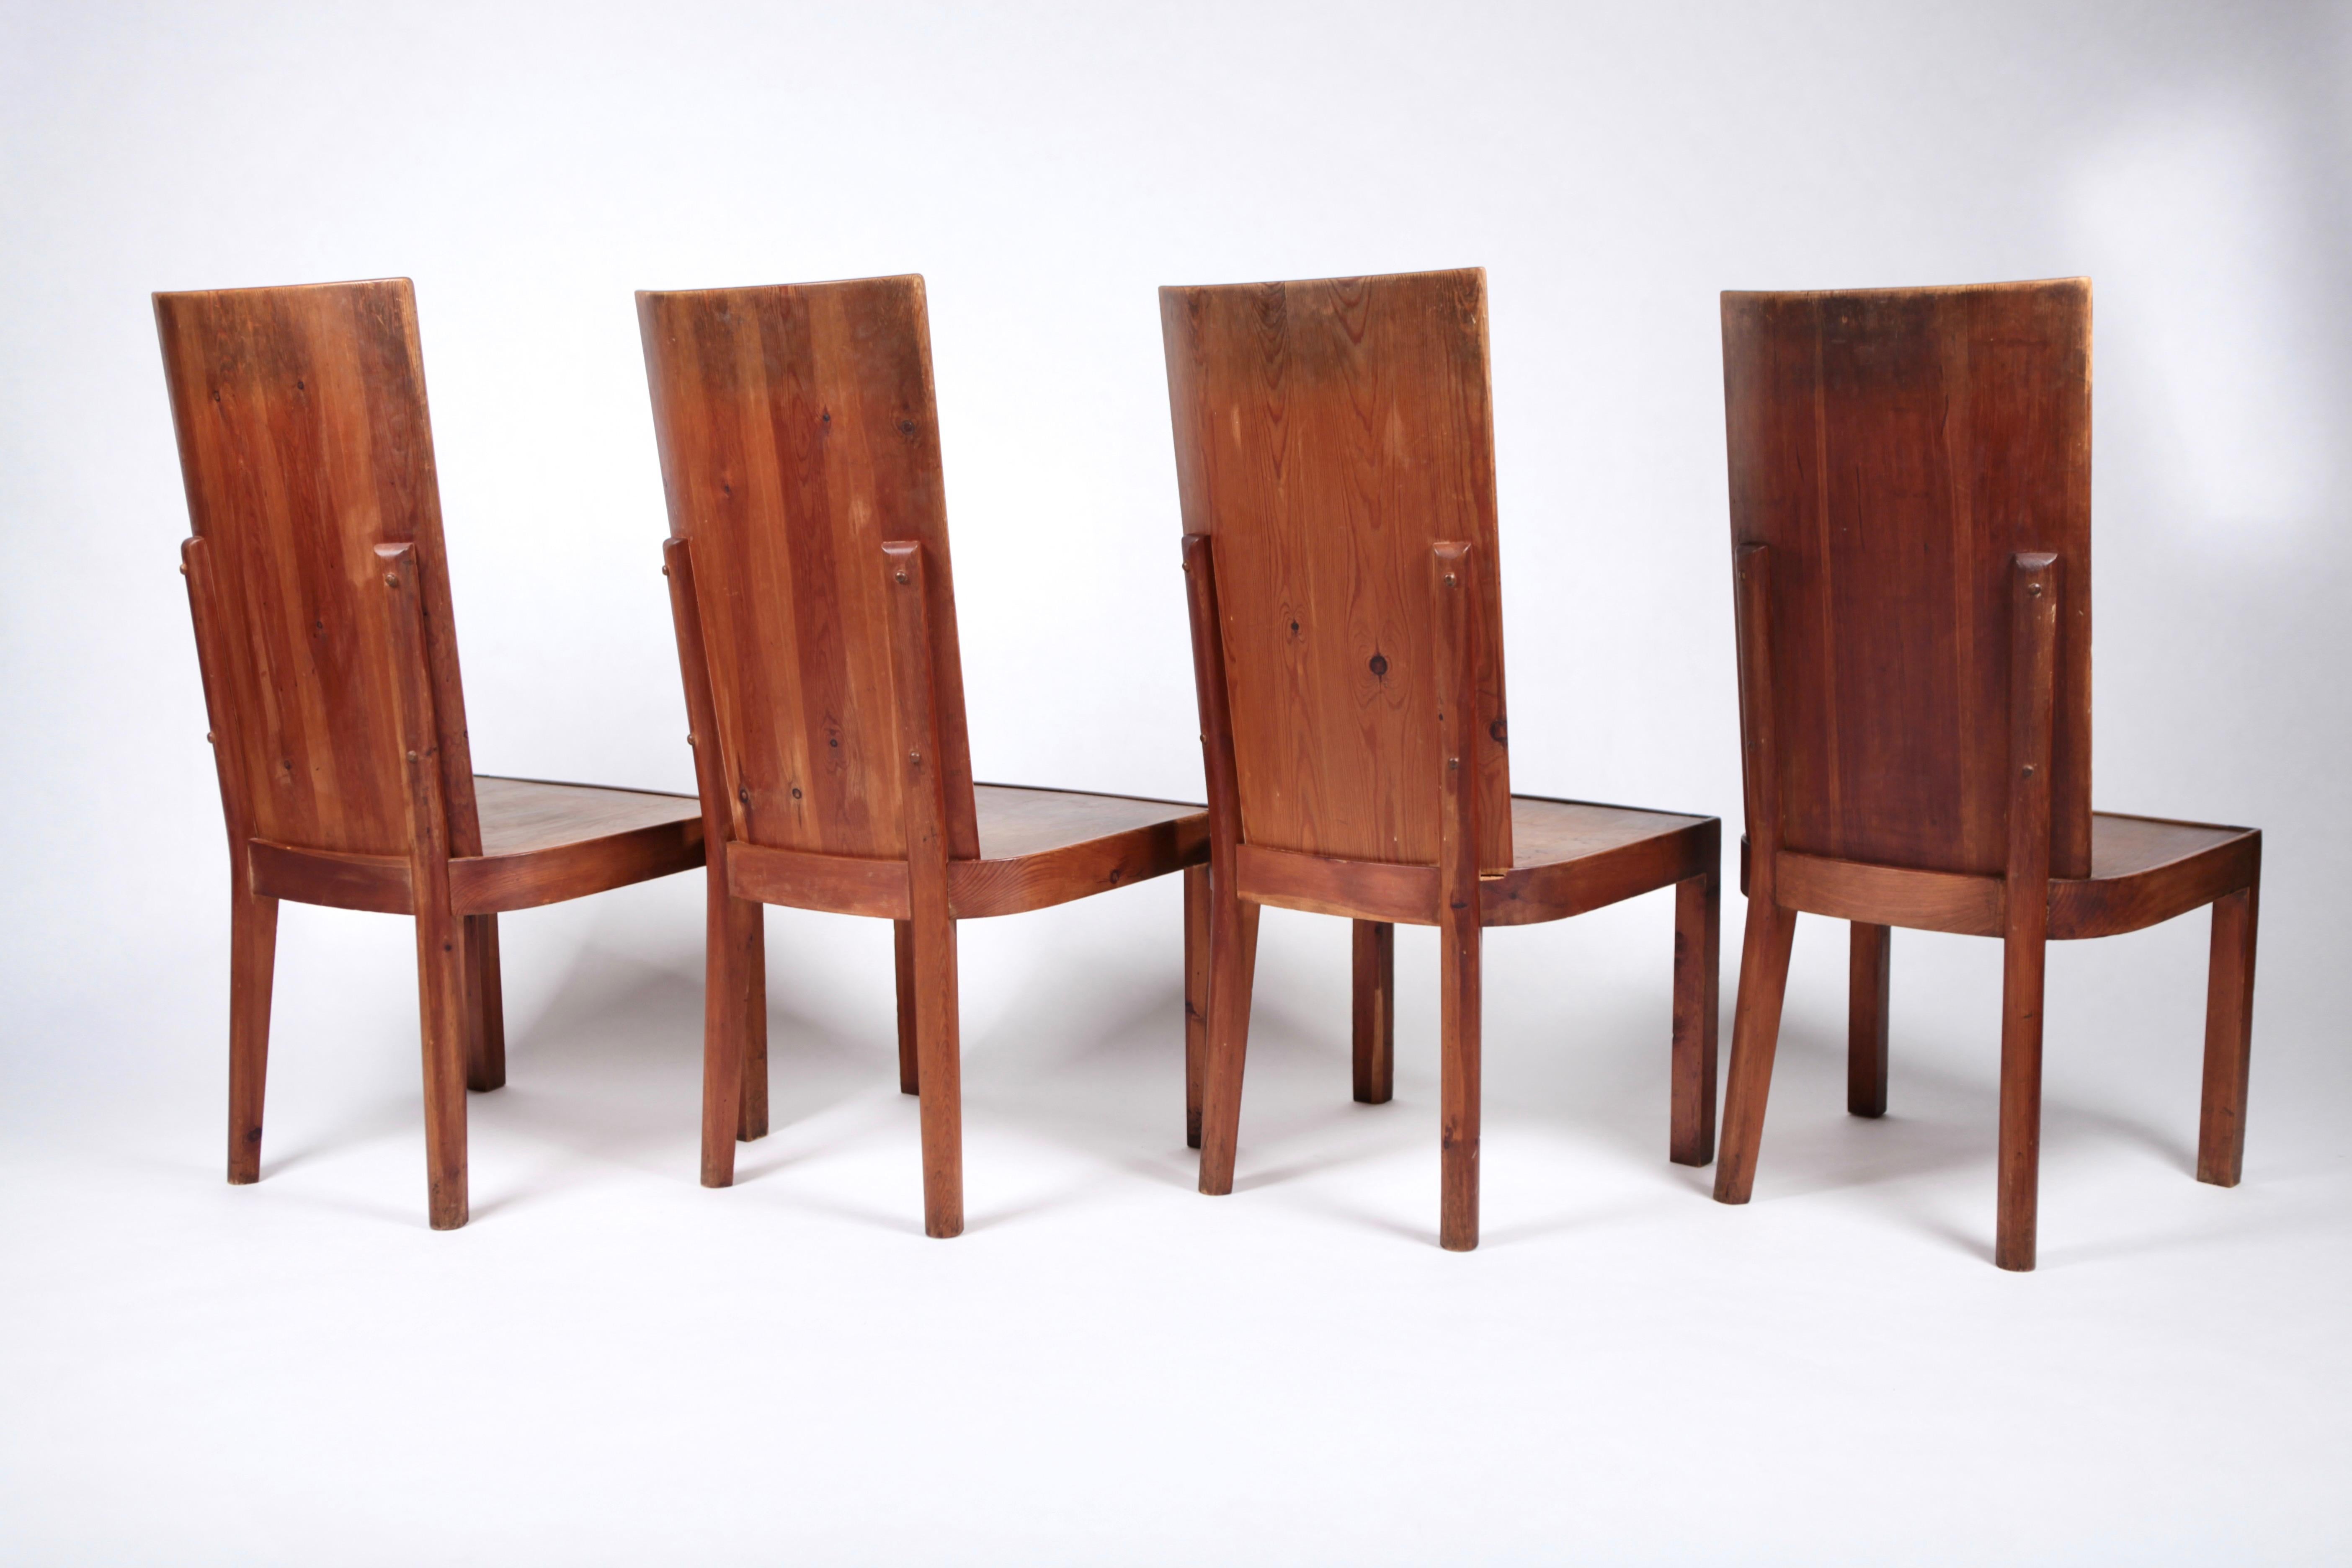 Ensemble de 4 chaises de salle à manger en pin teinté à l'acide, attribué à Axel Einar Hjorth, modèle Lovö, Suède années 1930.